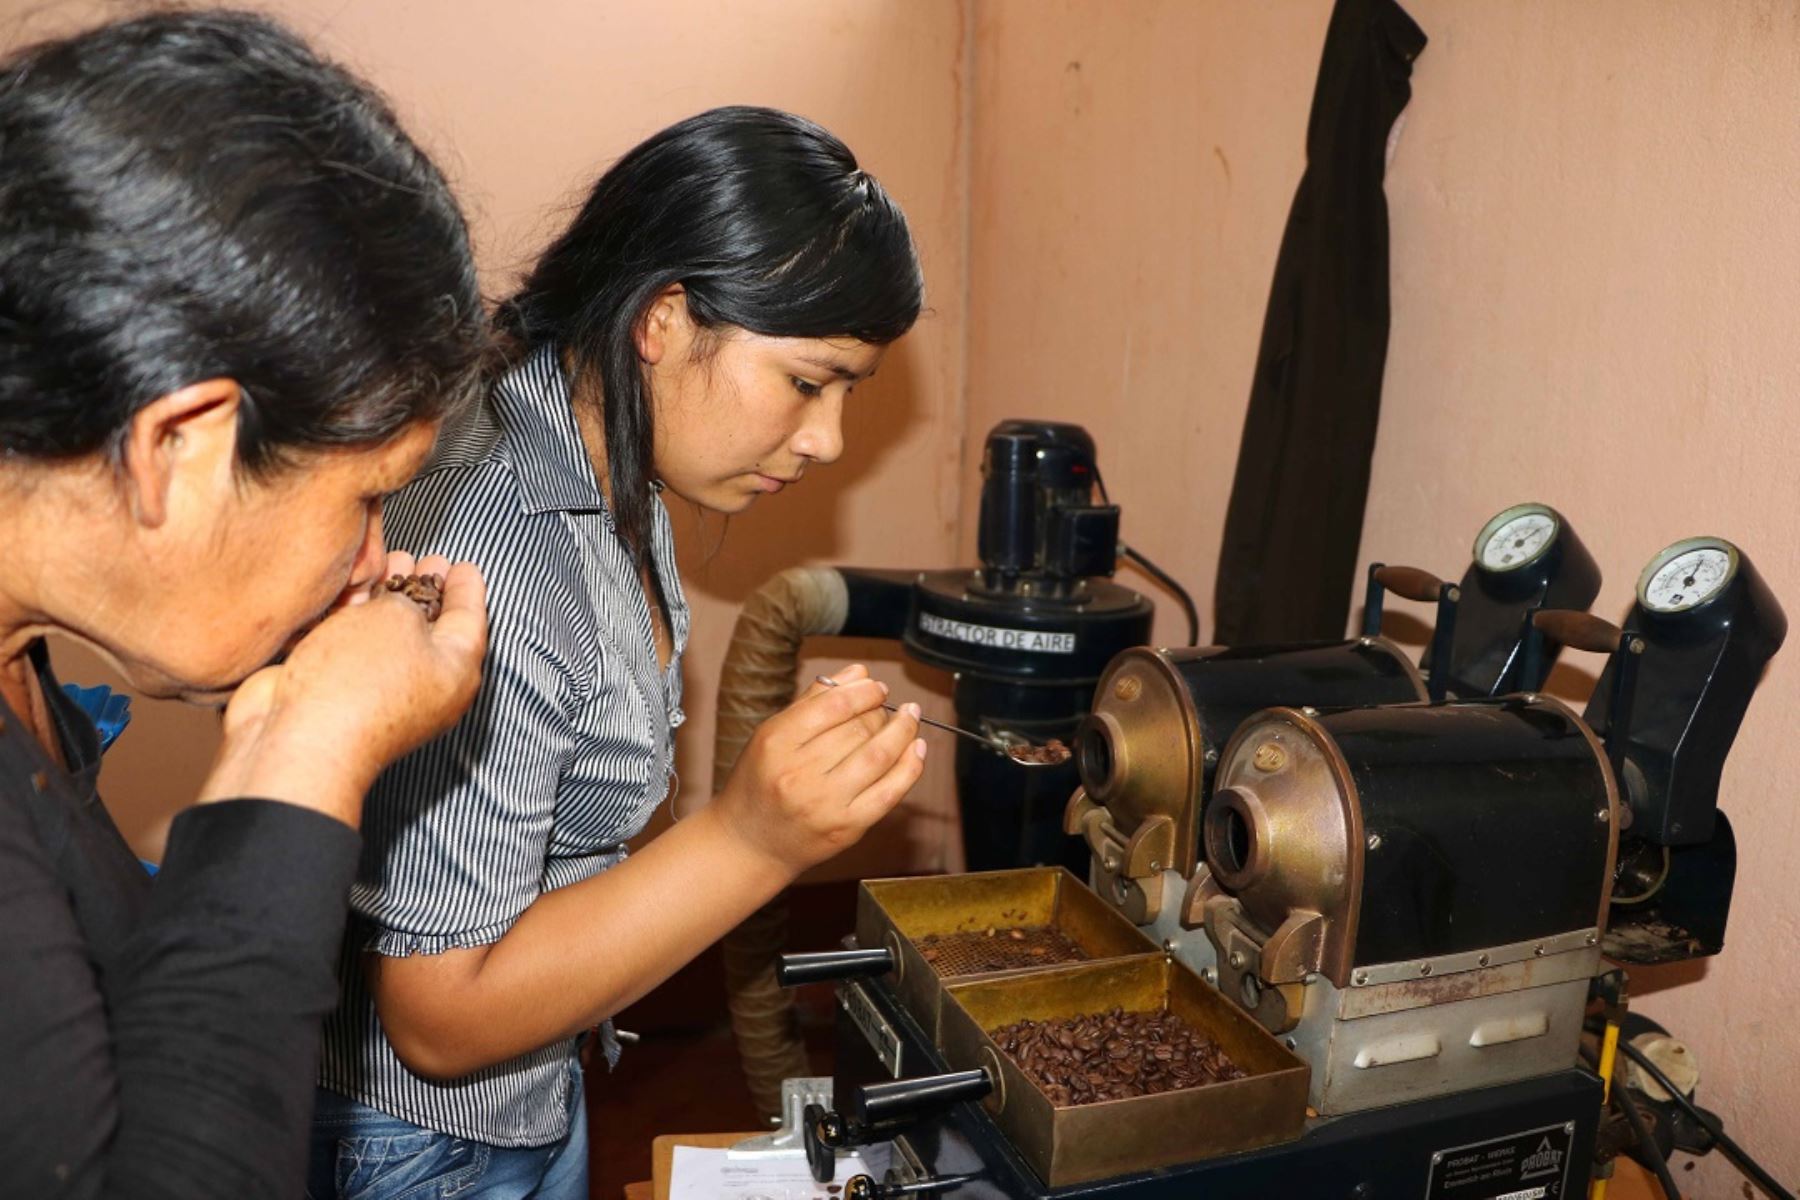 Capacitación para socios de organizaciones de productores cafetaleros de Mazamari, Pangoa y Río Tambo, en temas de transformación tecnológica del café, culminó con éxito en la ciudad de Satipo gracias al Programa de Desarrollo Alternativo en Satipo.